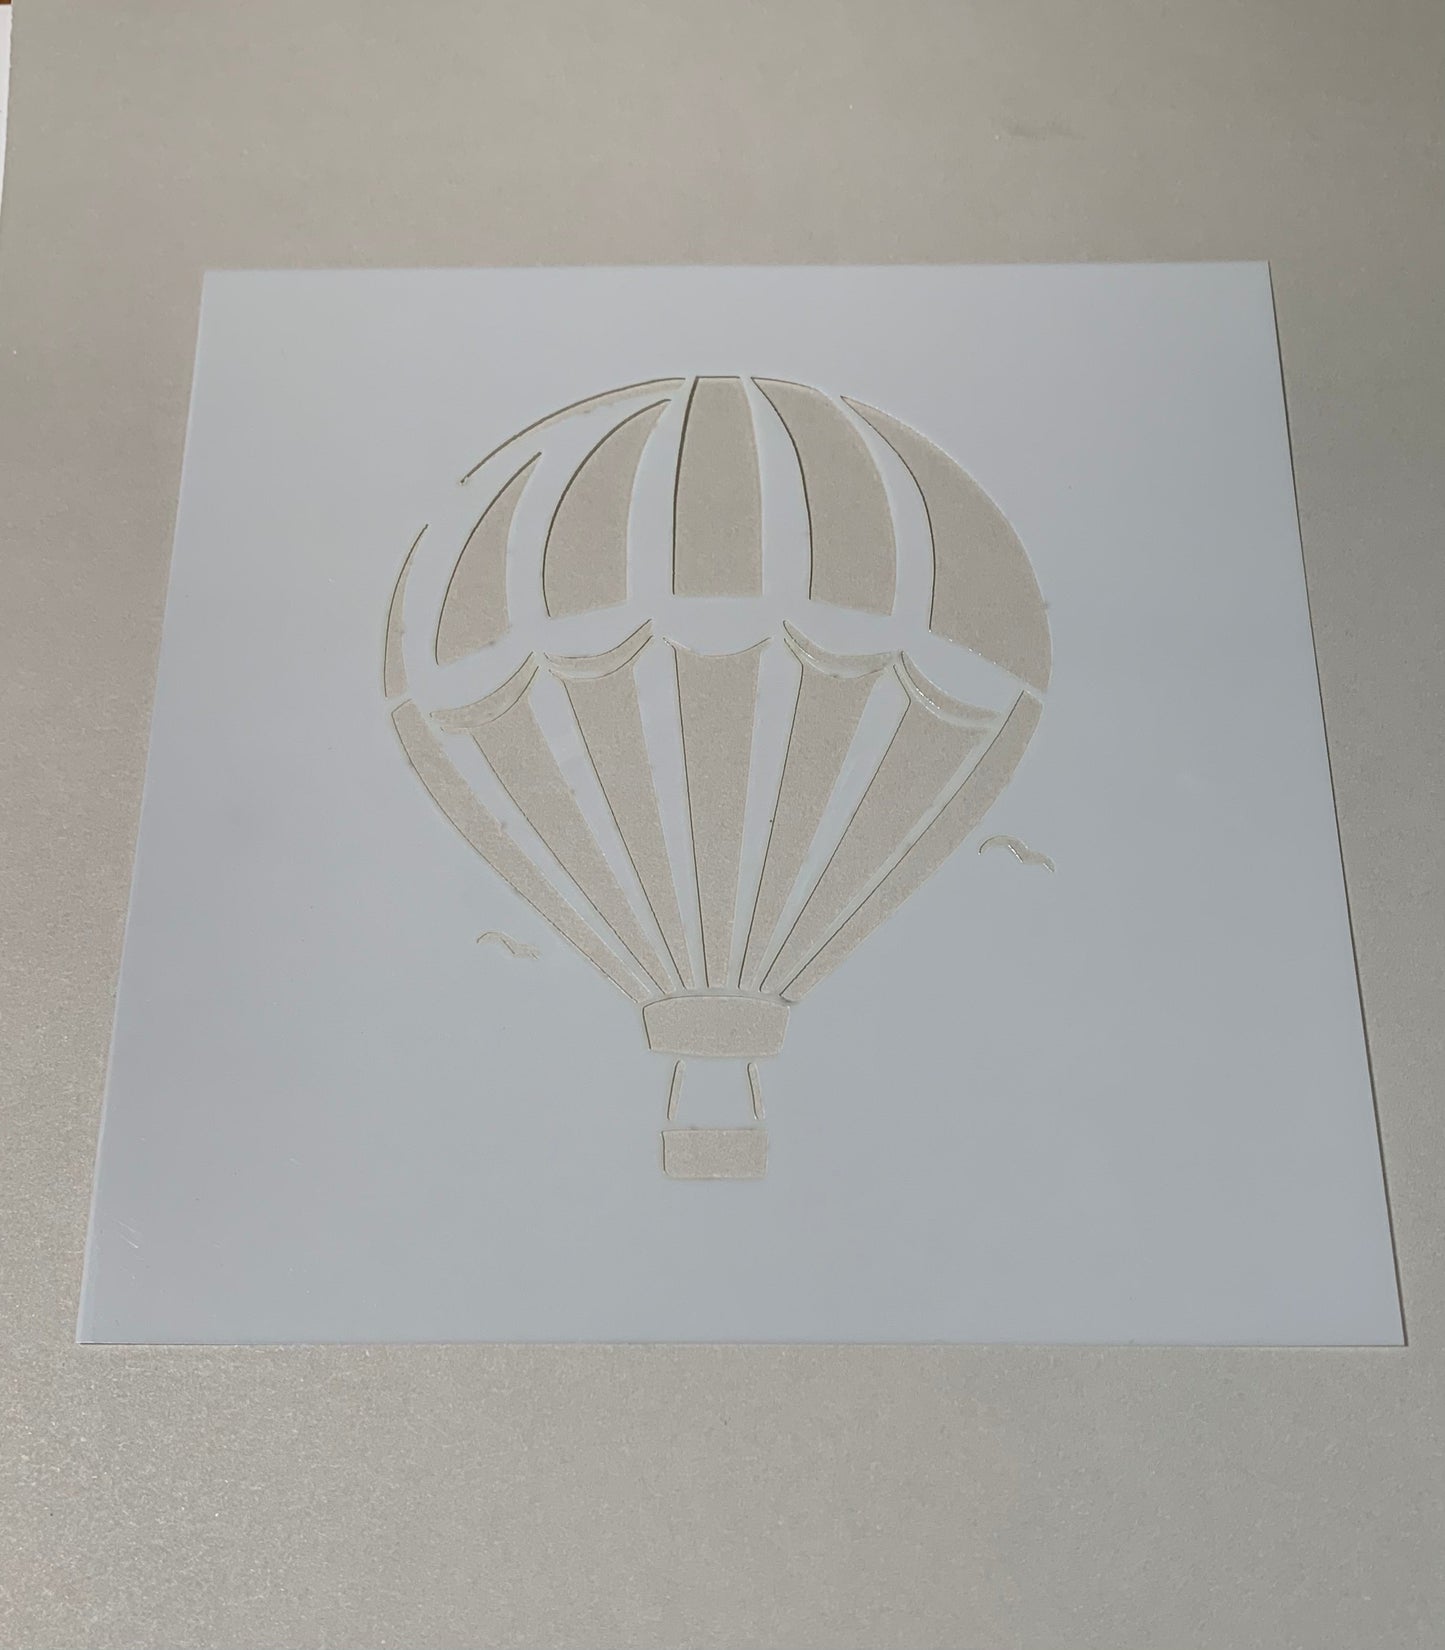 Hot air balloon stencil - Creative Designs By Kari